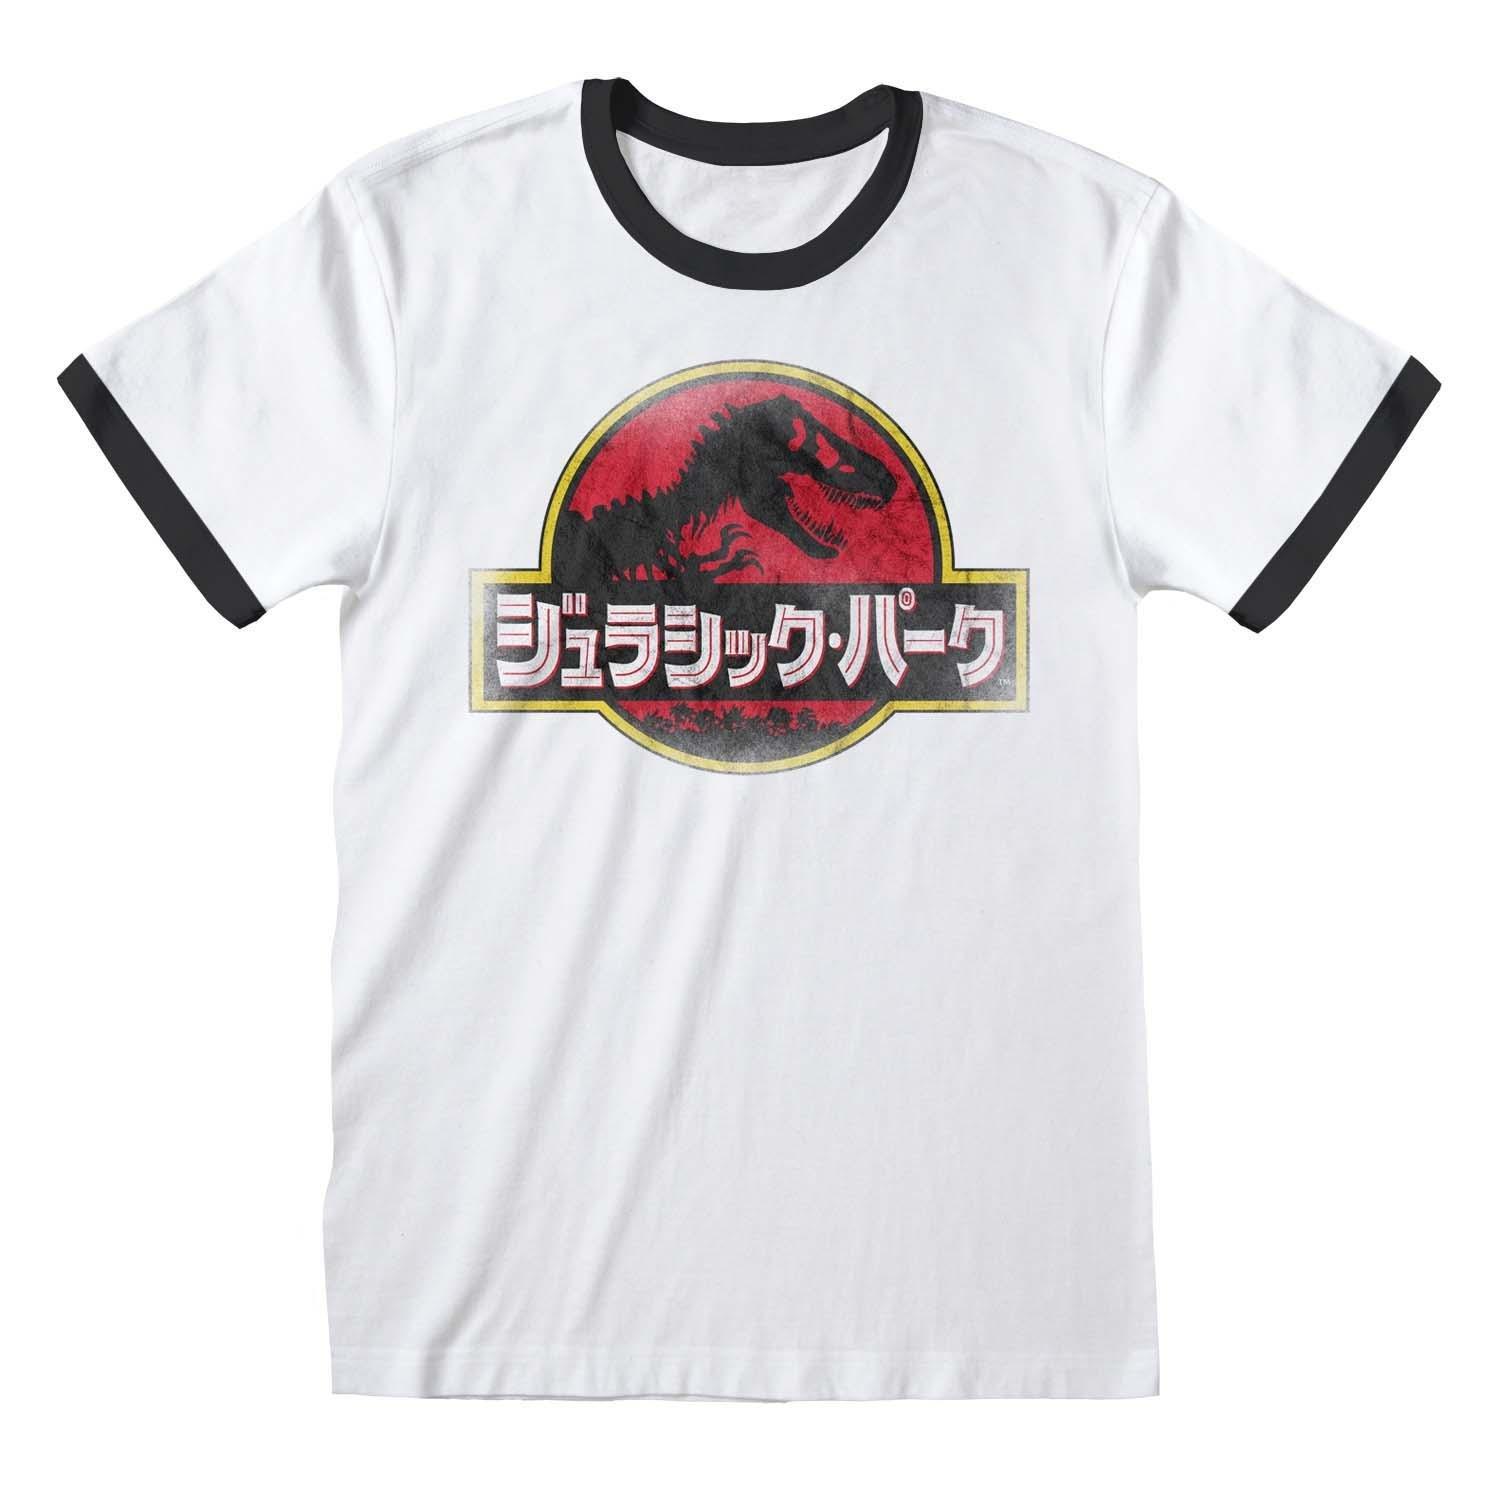 T-shirt Damen Weiss Bedruckt M von Jurassic Park